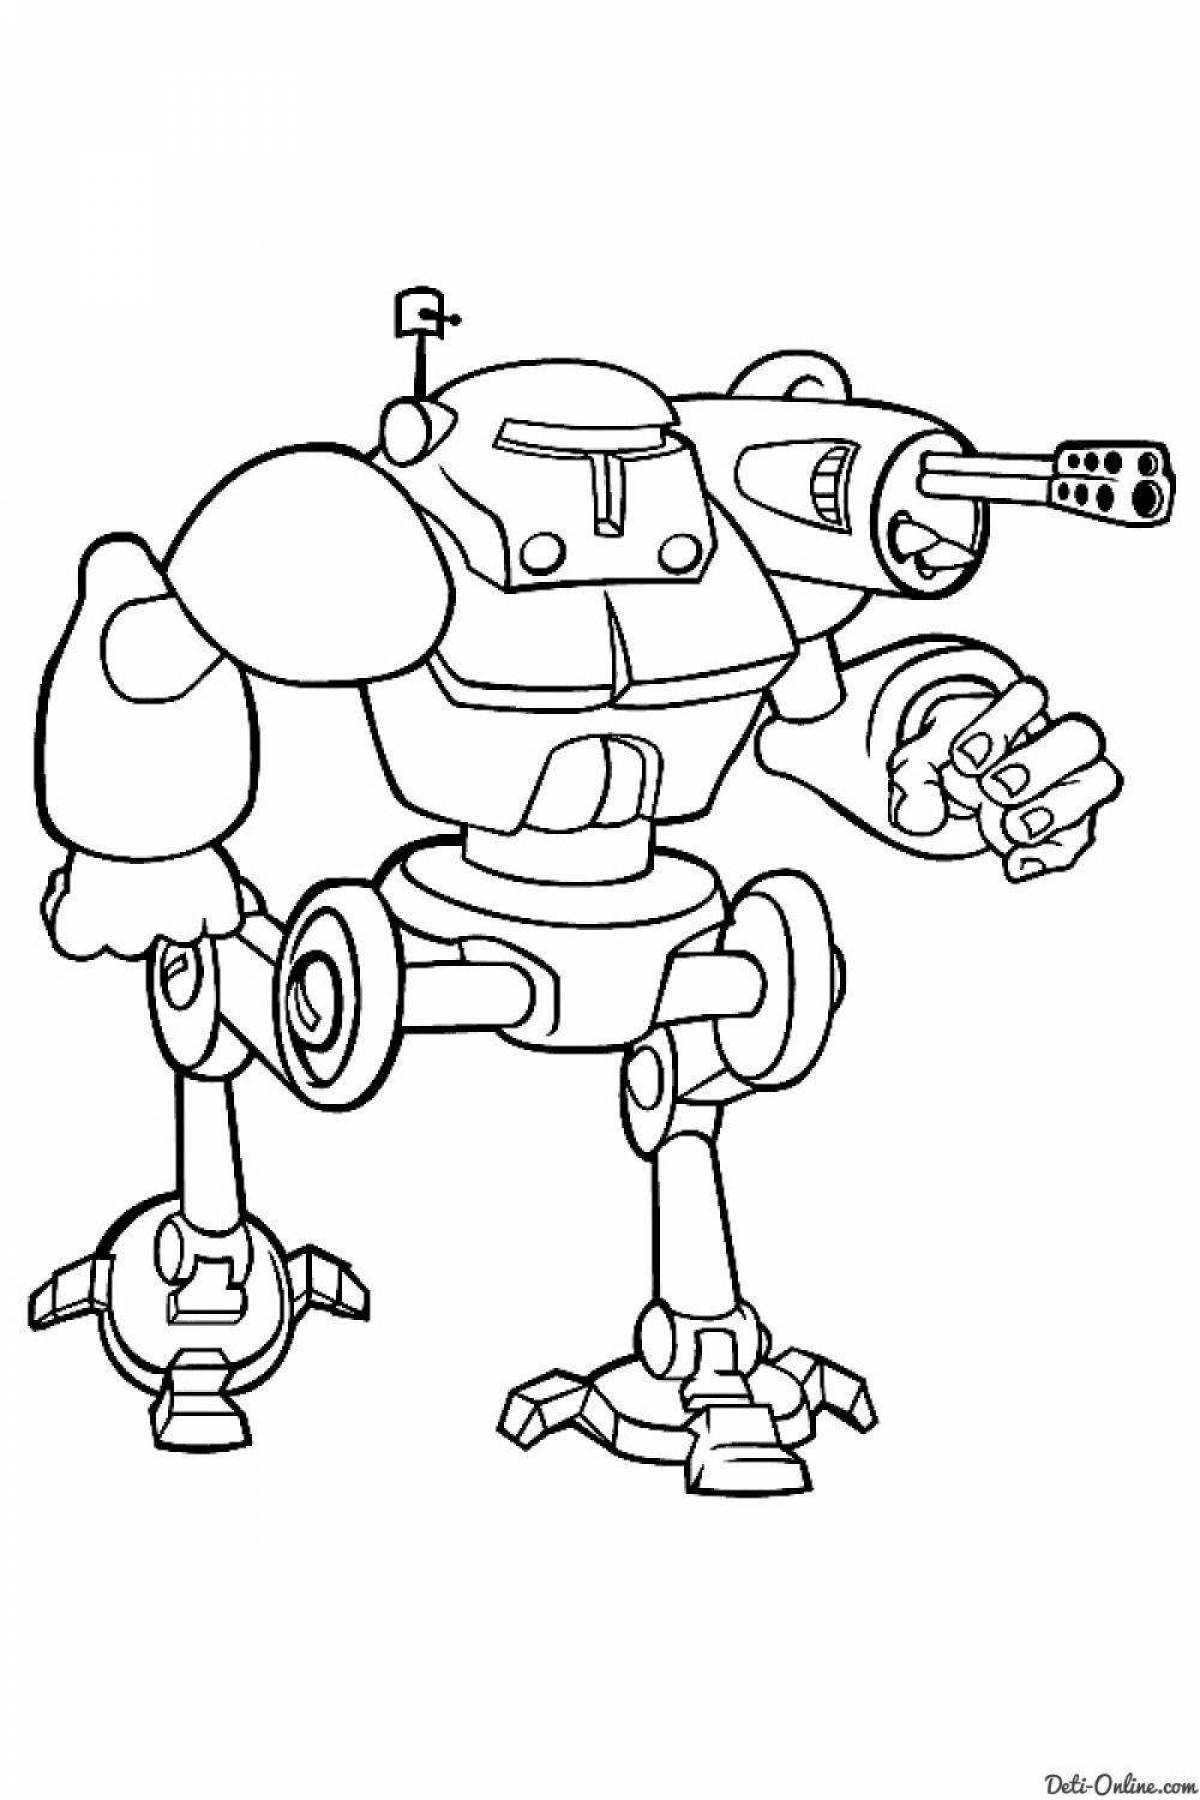 Complex combat robots coloring page